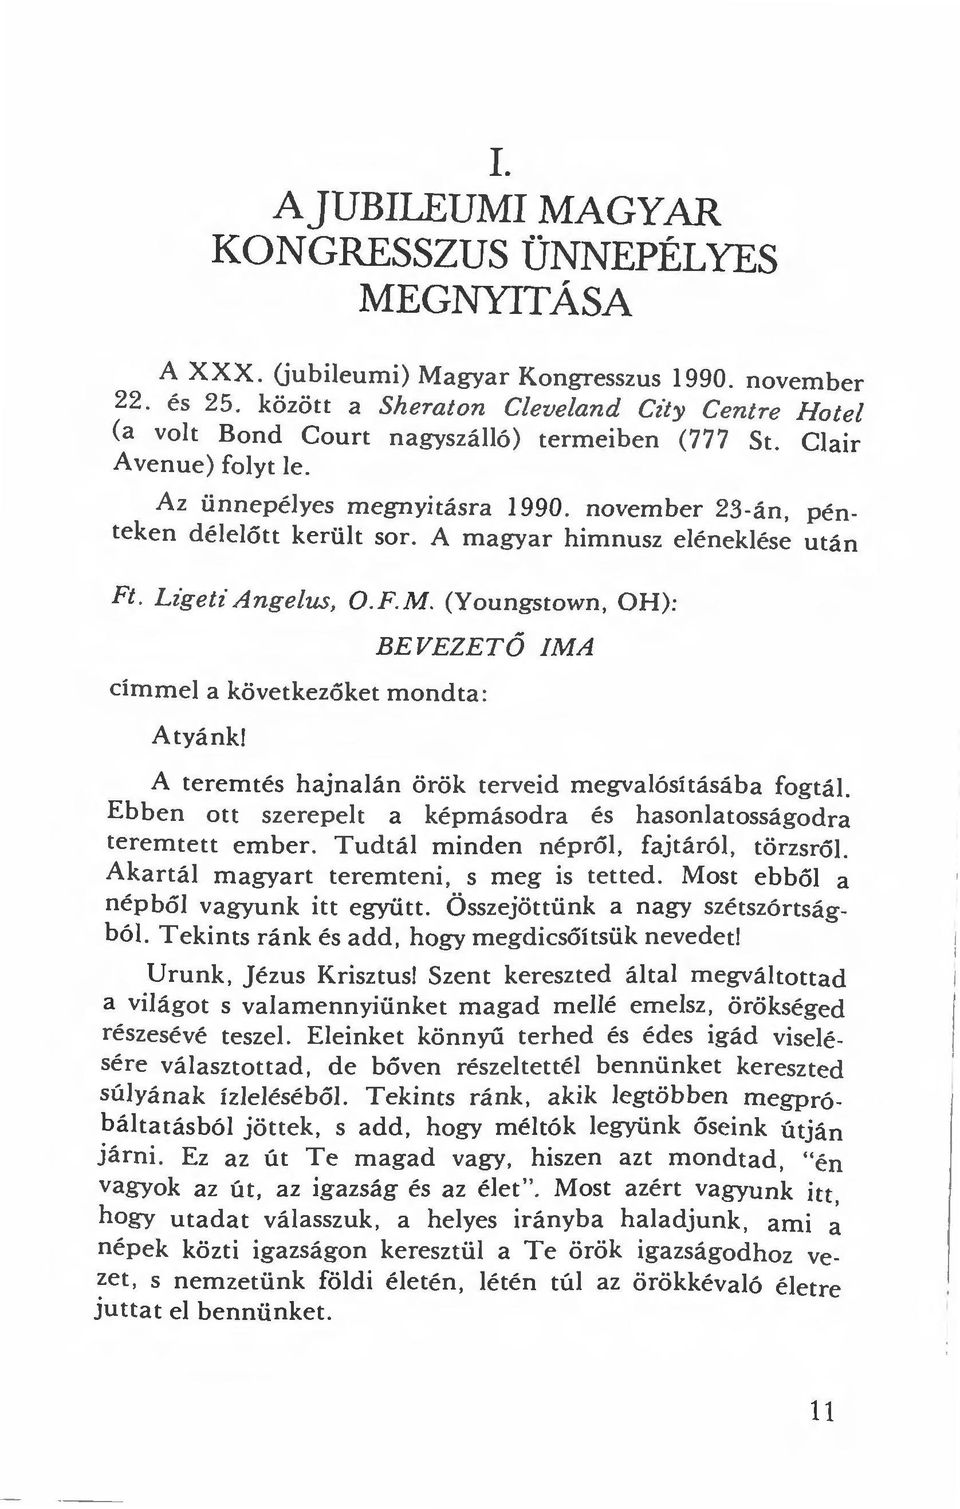 november 23-án, pénteken d é l e lőtt került sor. A magyar himnusz eléneklése után Ft. Lzget z' Angelus, O.F.M. (Youngstown, OH): BEVEZETŐ IMA címmel a köv e tkezőket mondta: Atyánk!